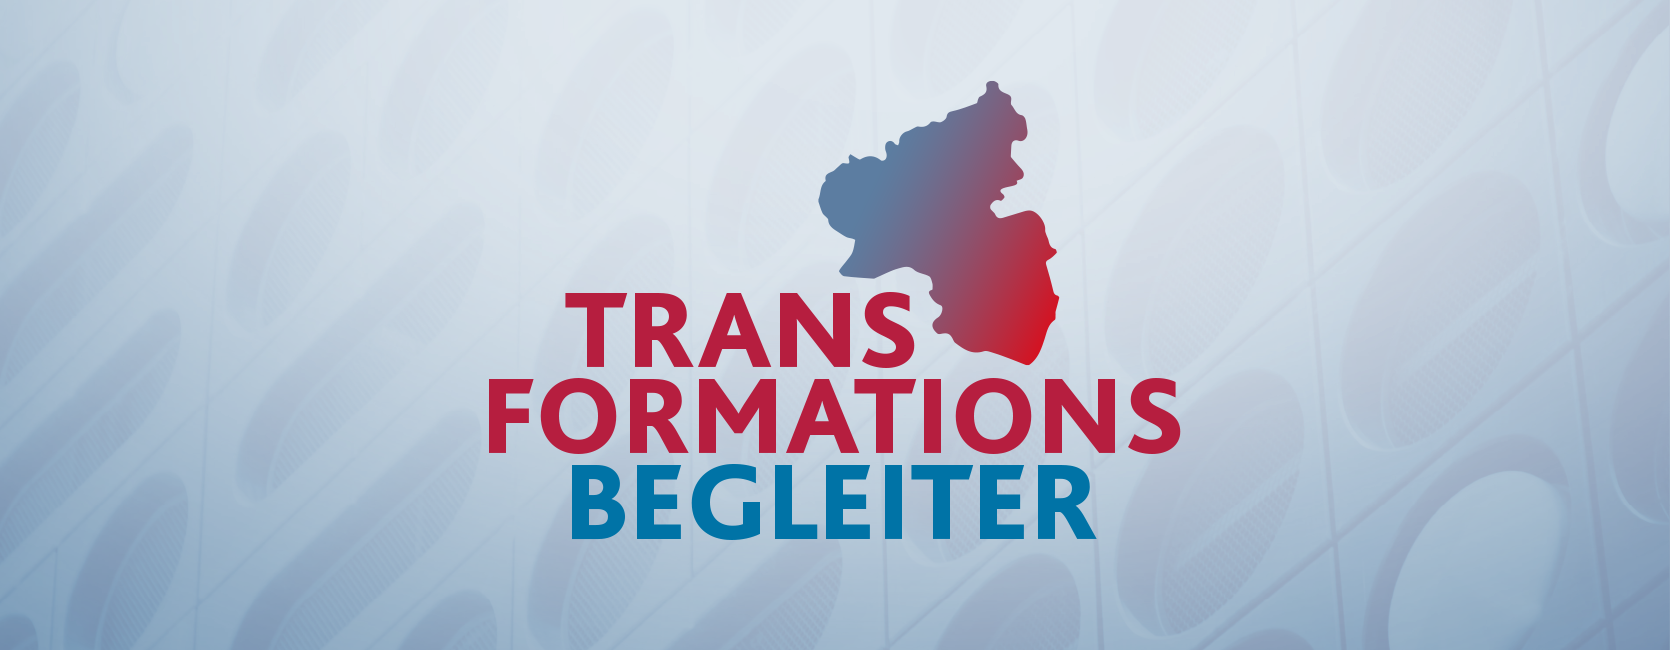 Bühnenbild mit Logo der Transformationsbegleiter.